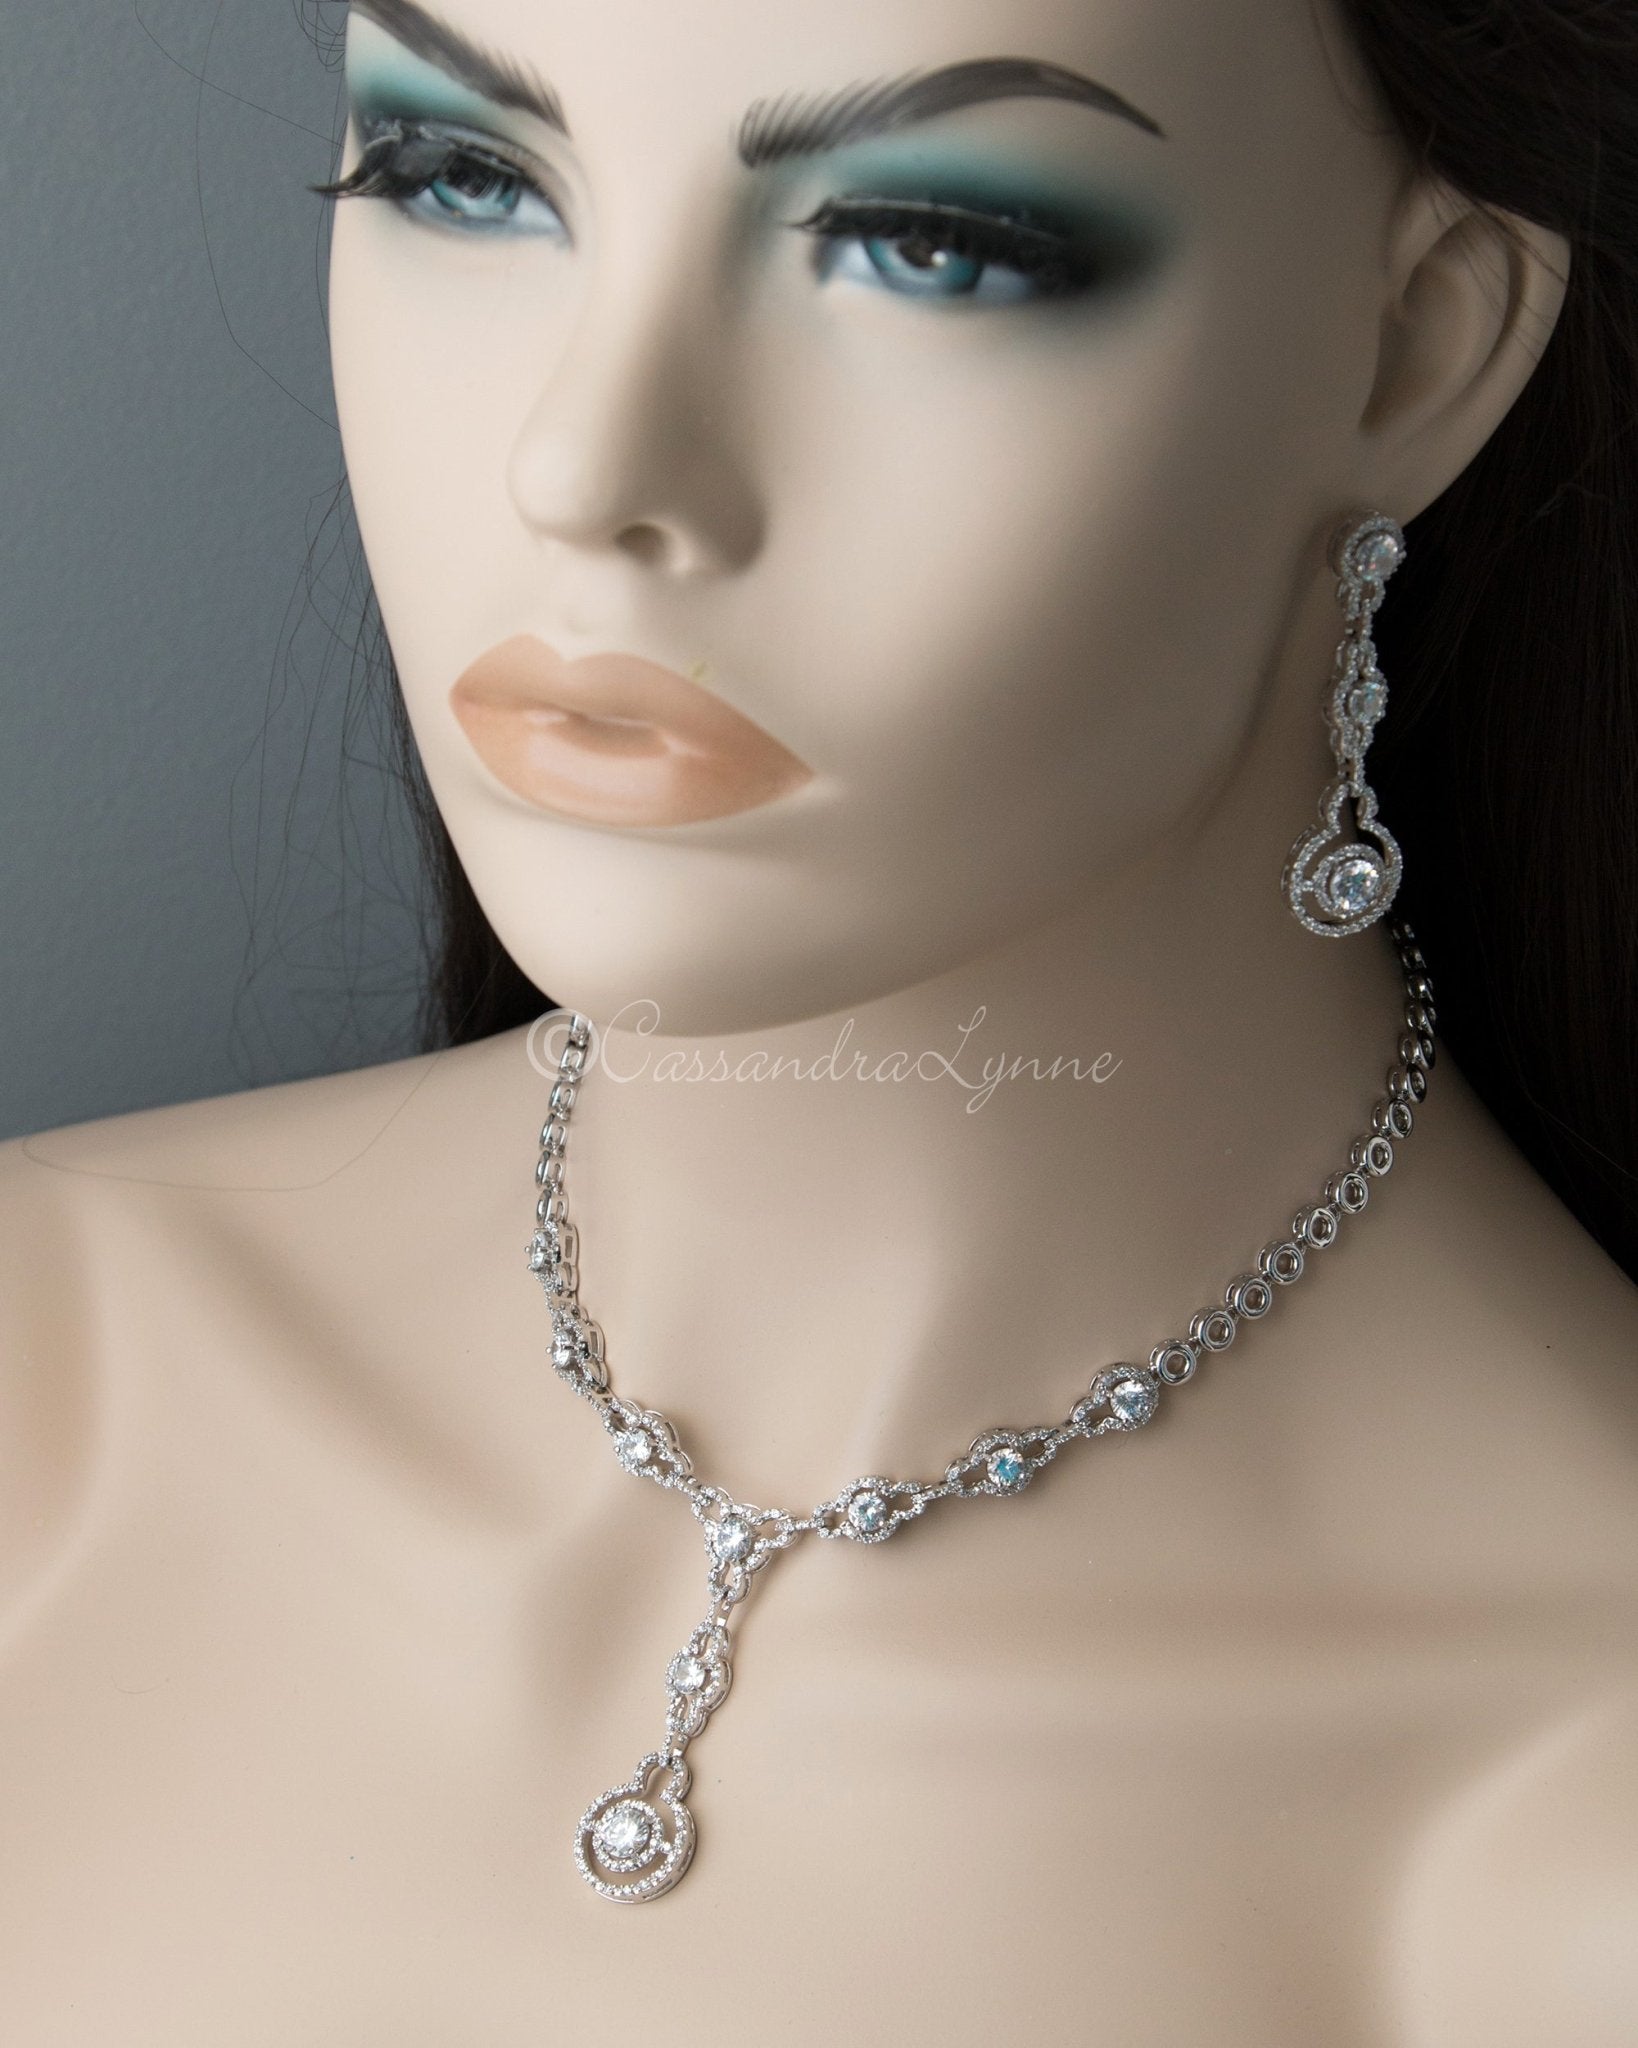 Designer Inspired CZ Necklace and Earrings Set - Cassandra Lynne